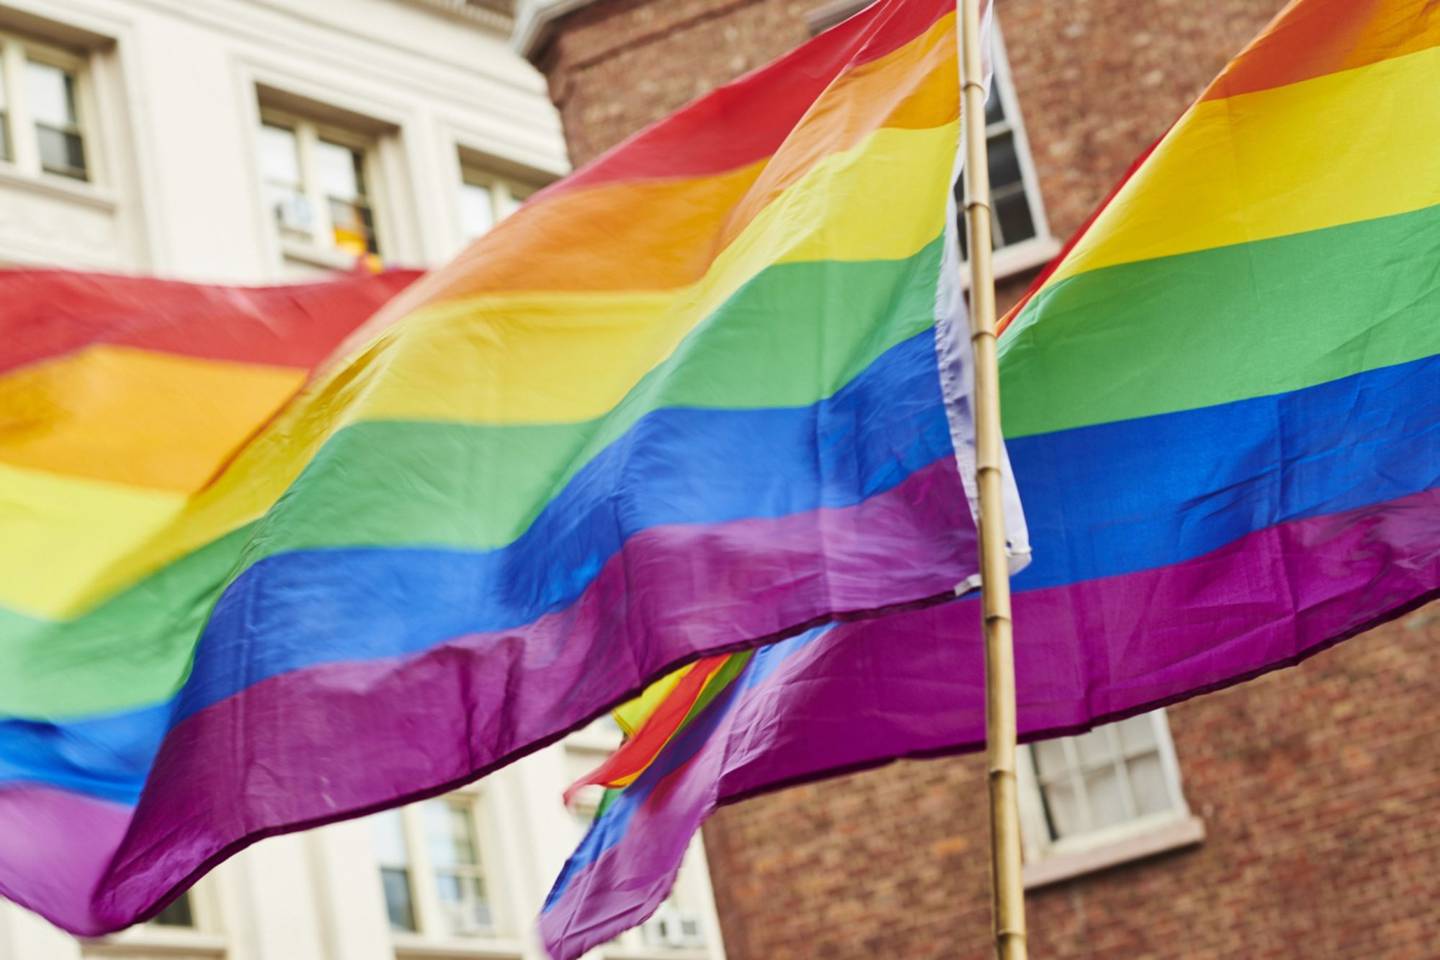 Meta y Colmena 41 realizaron un estudio para conocer detalles de la comunidad LGBT emprendedora. Photographer: Gabby Jones/Bloomberg